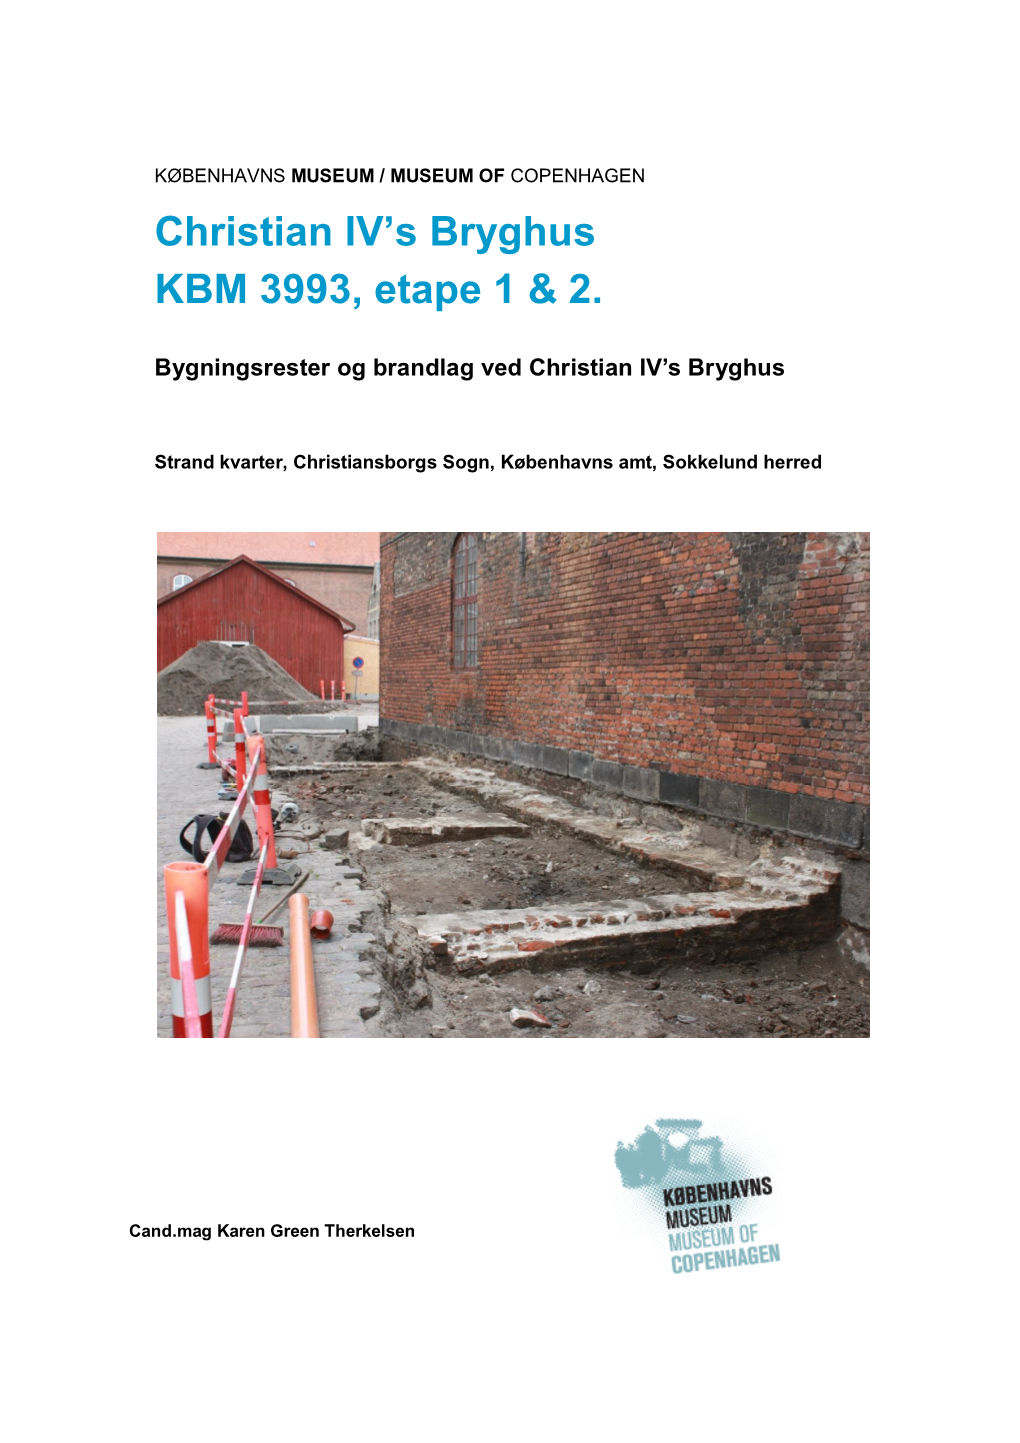 Christian IV's Bryghus KBM 3993, Etape 1 & 2